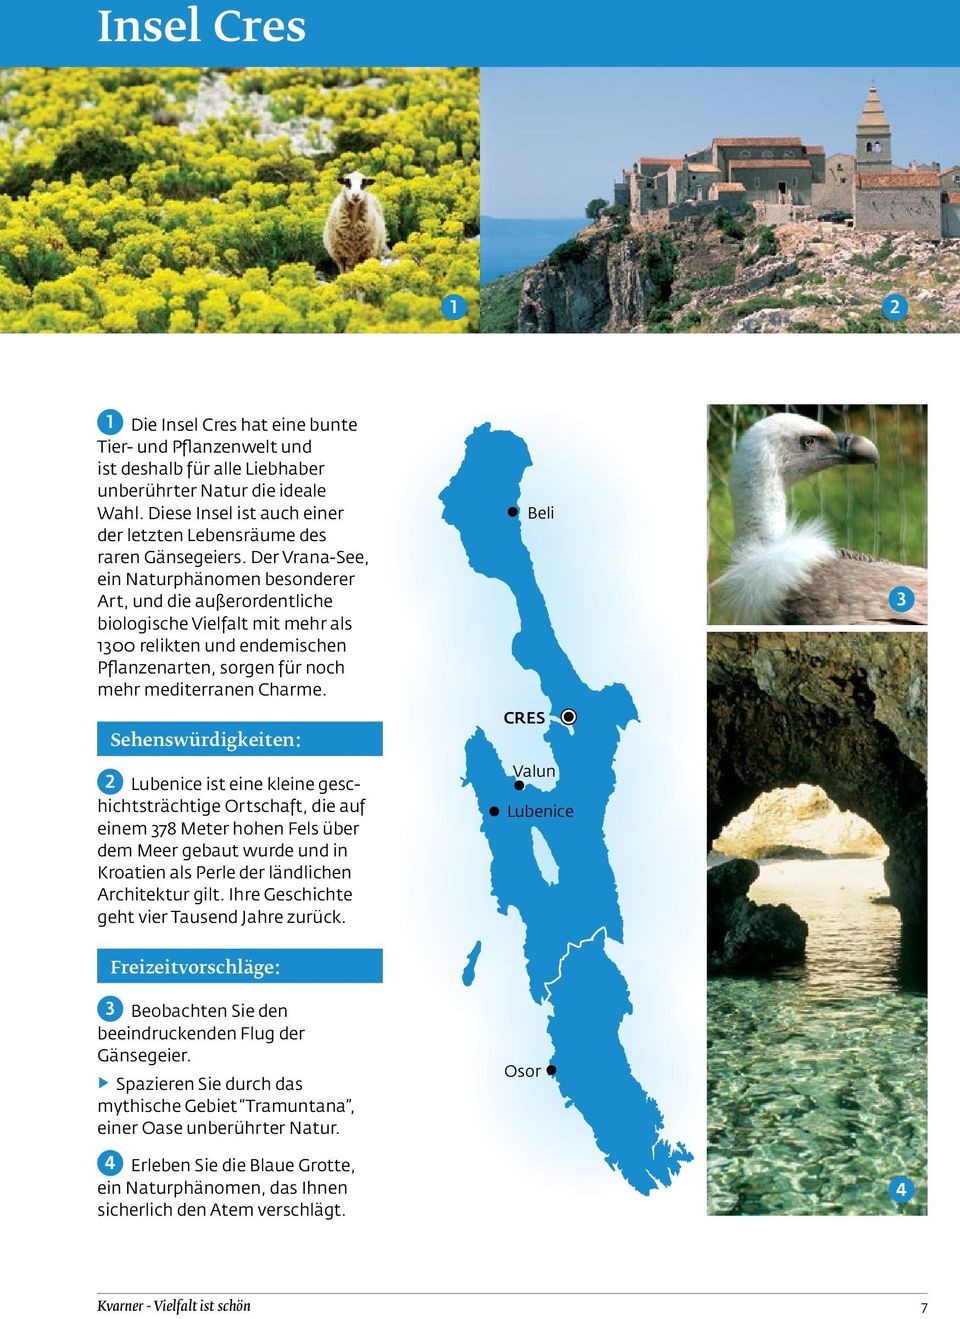 Der Vrana-See, ein Naturphänomen besonderer Art, und die außerordentliche biologische Vielfalt mit mehr als 1300 relikten und endemischen Pflanzenarten, sorgen für noch mehr mediterranen Charme.